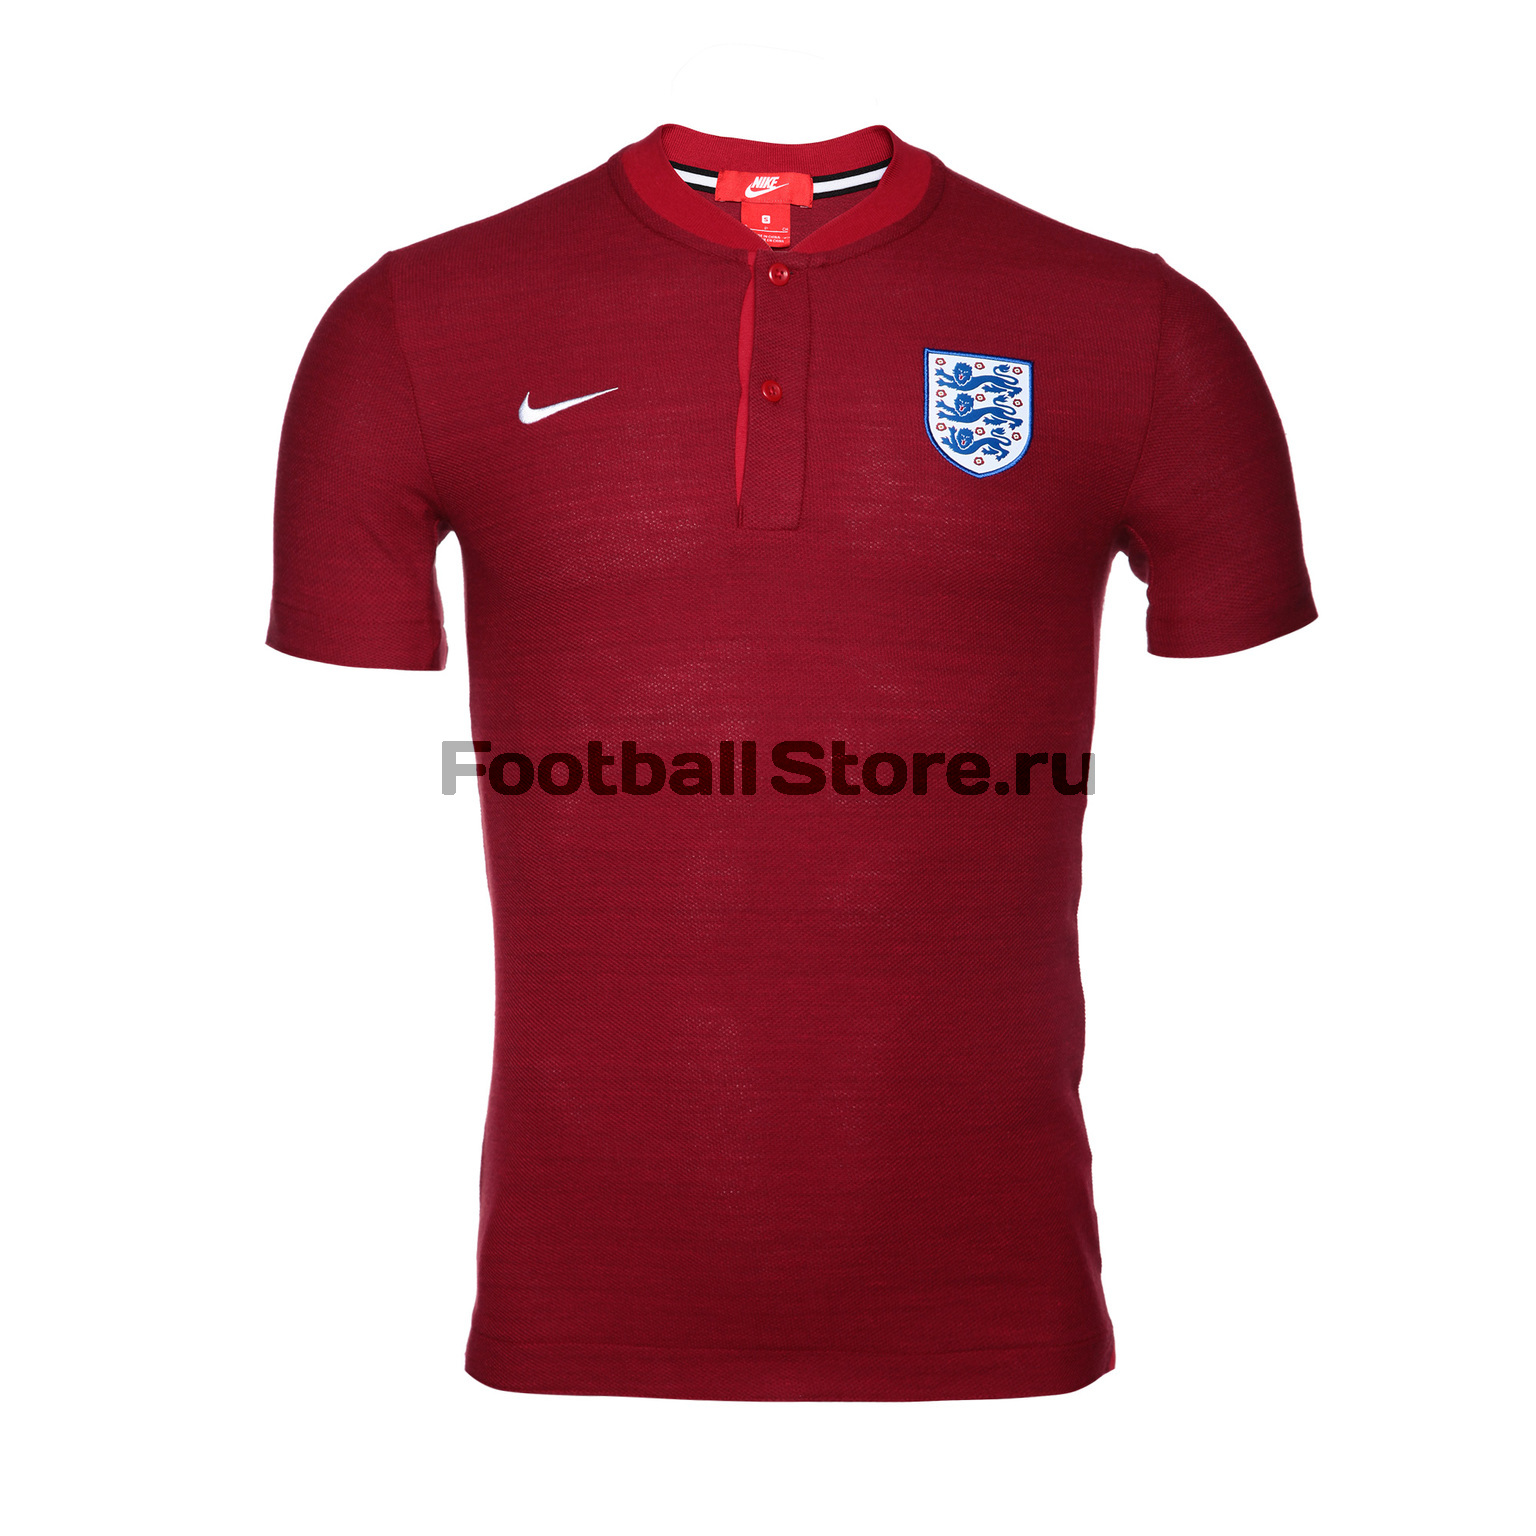 Поло Nike сборной Англии 942990-689 